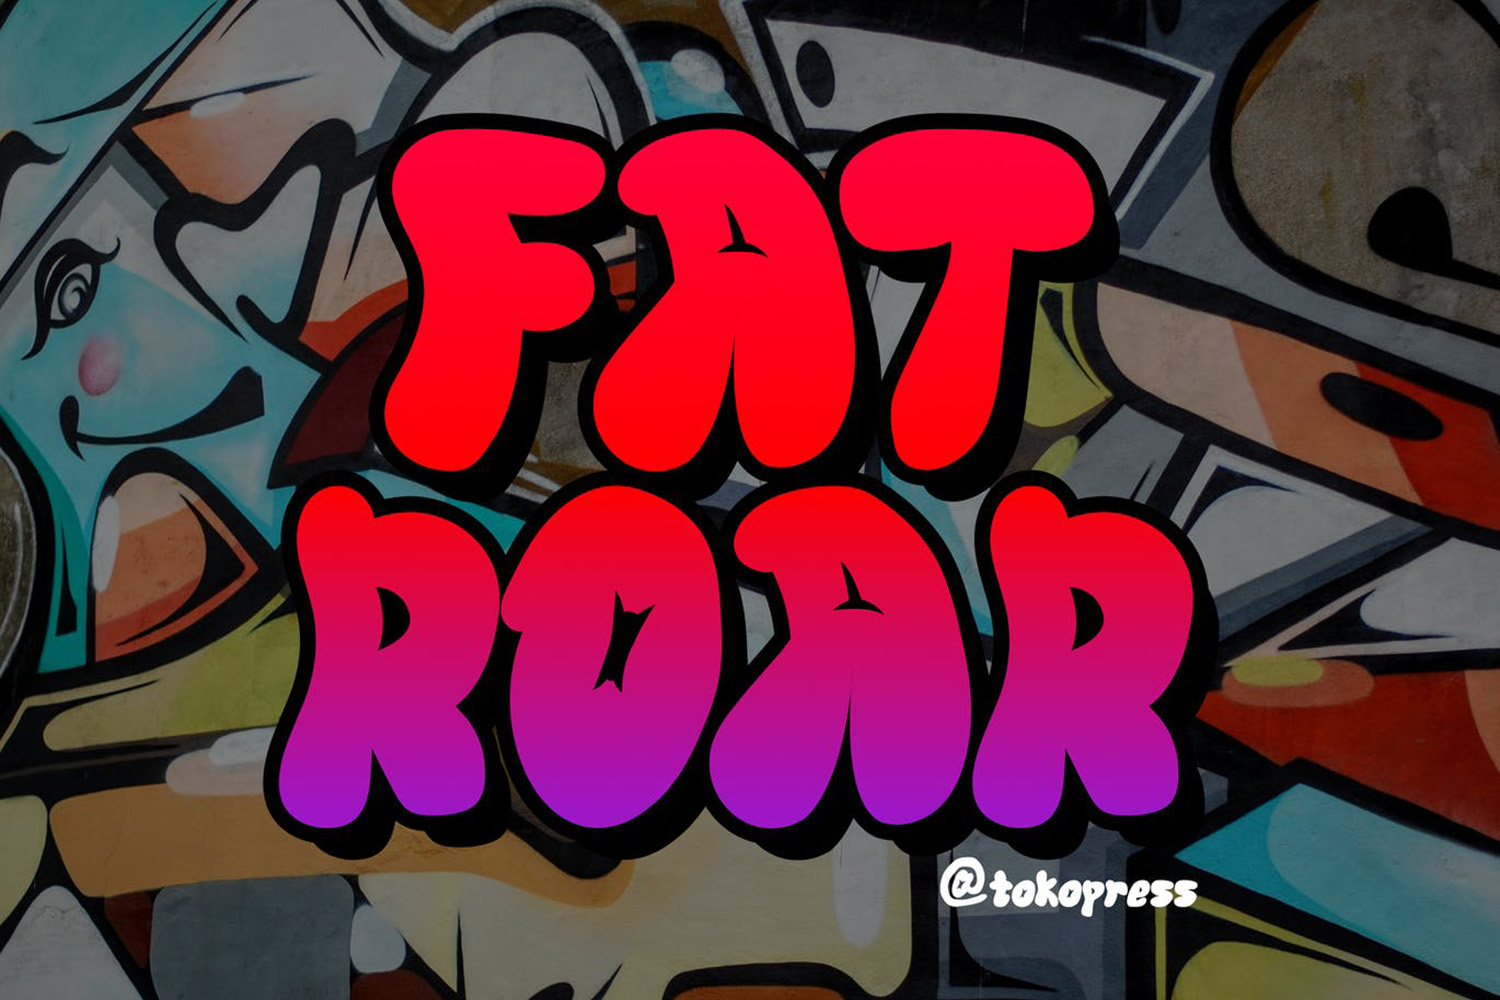 Fat Roar Free Font